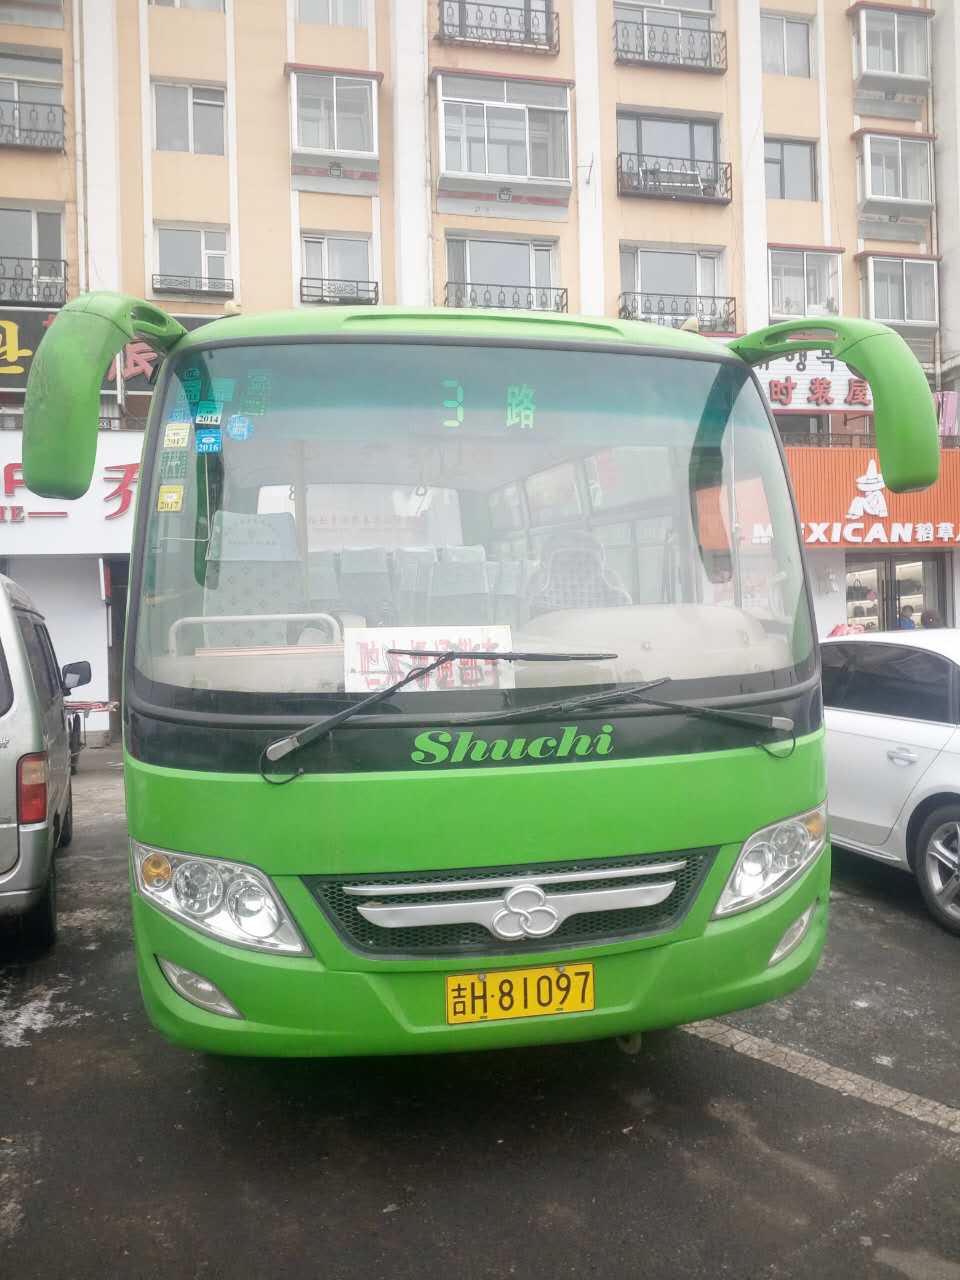 安图公交提供公交线路汽车 安图县内公交线路公交车供应